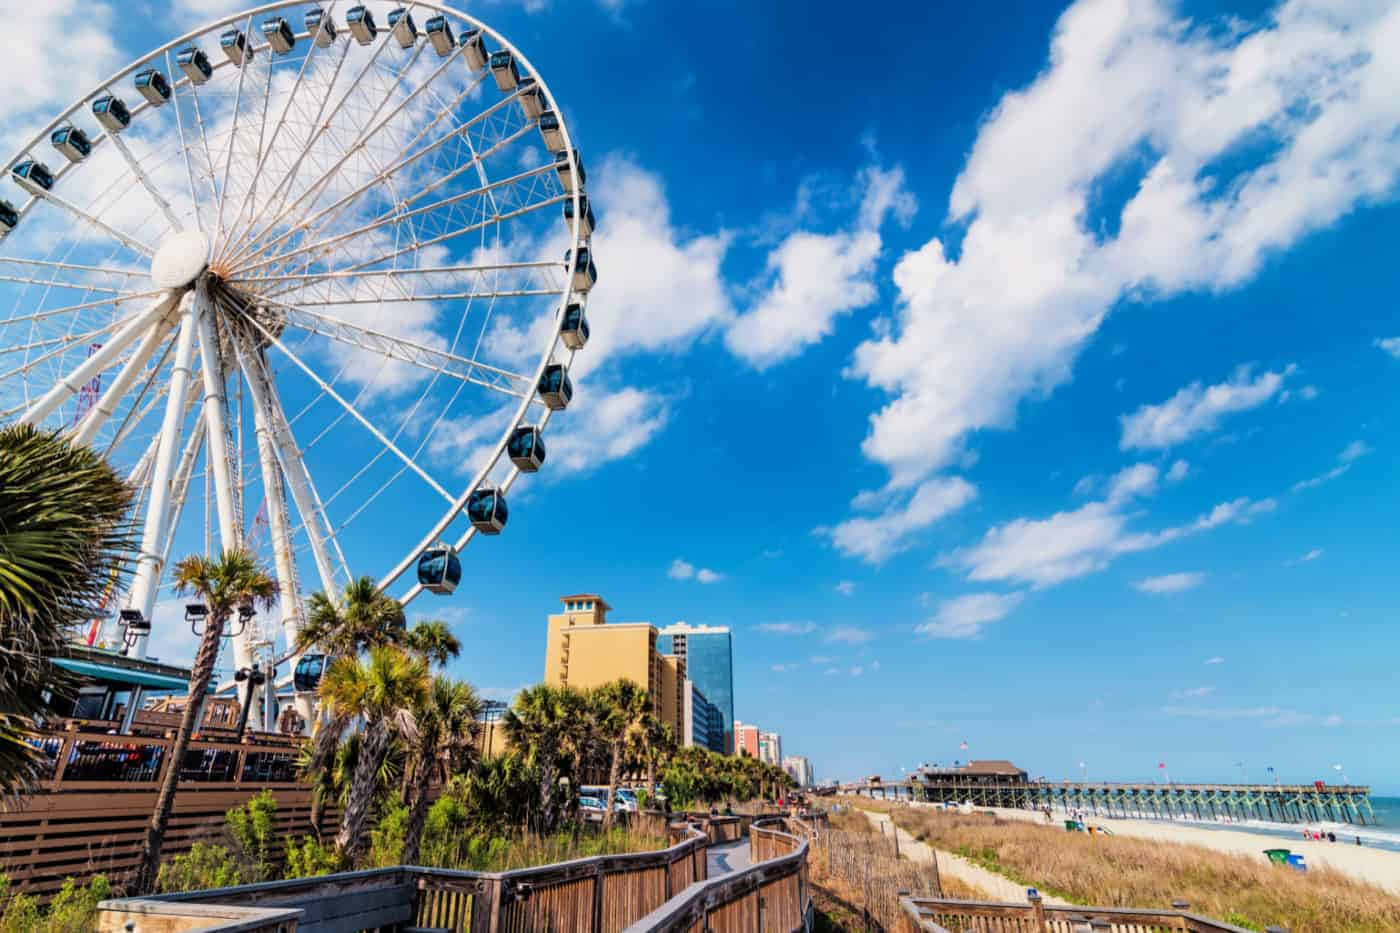 A Ferris Wheel And Beach In A City